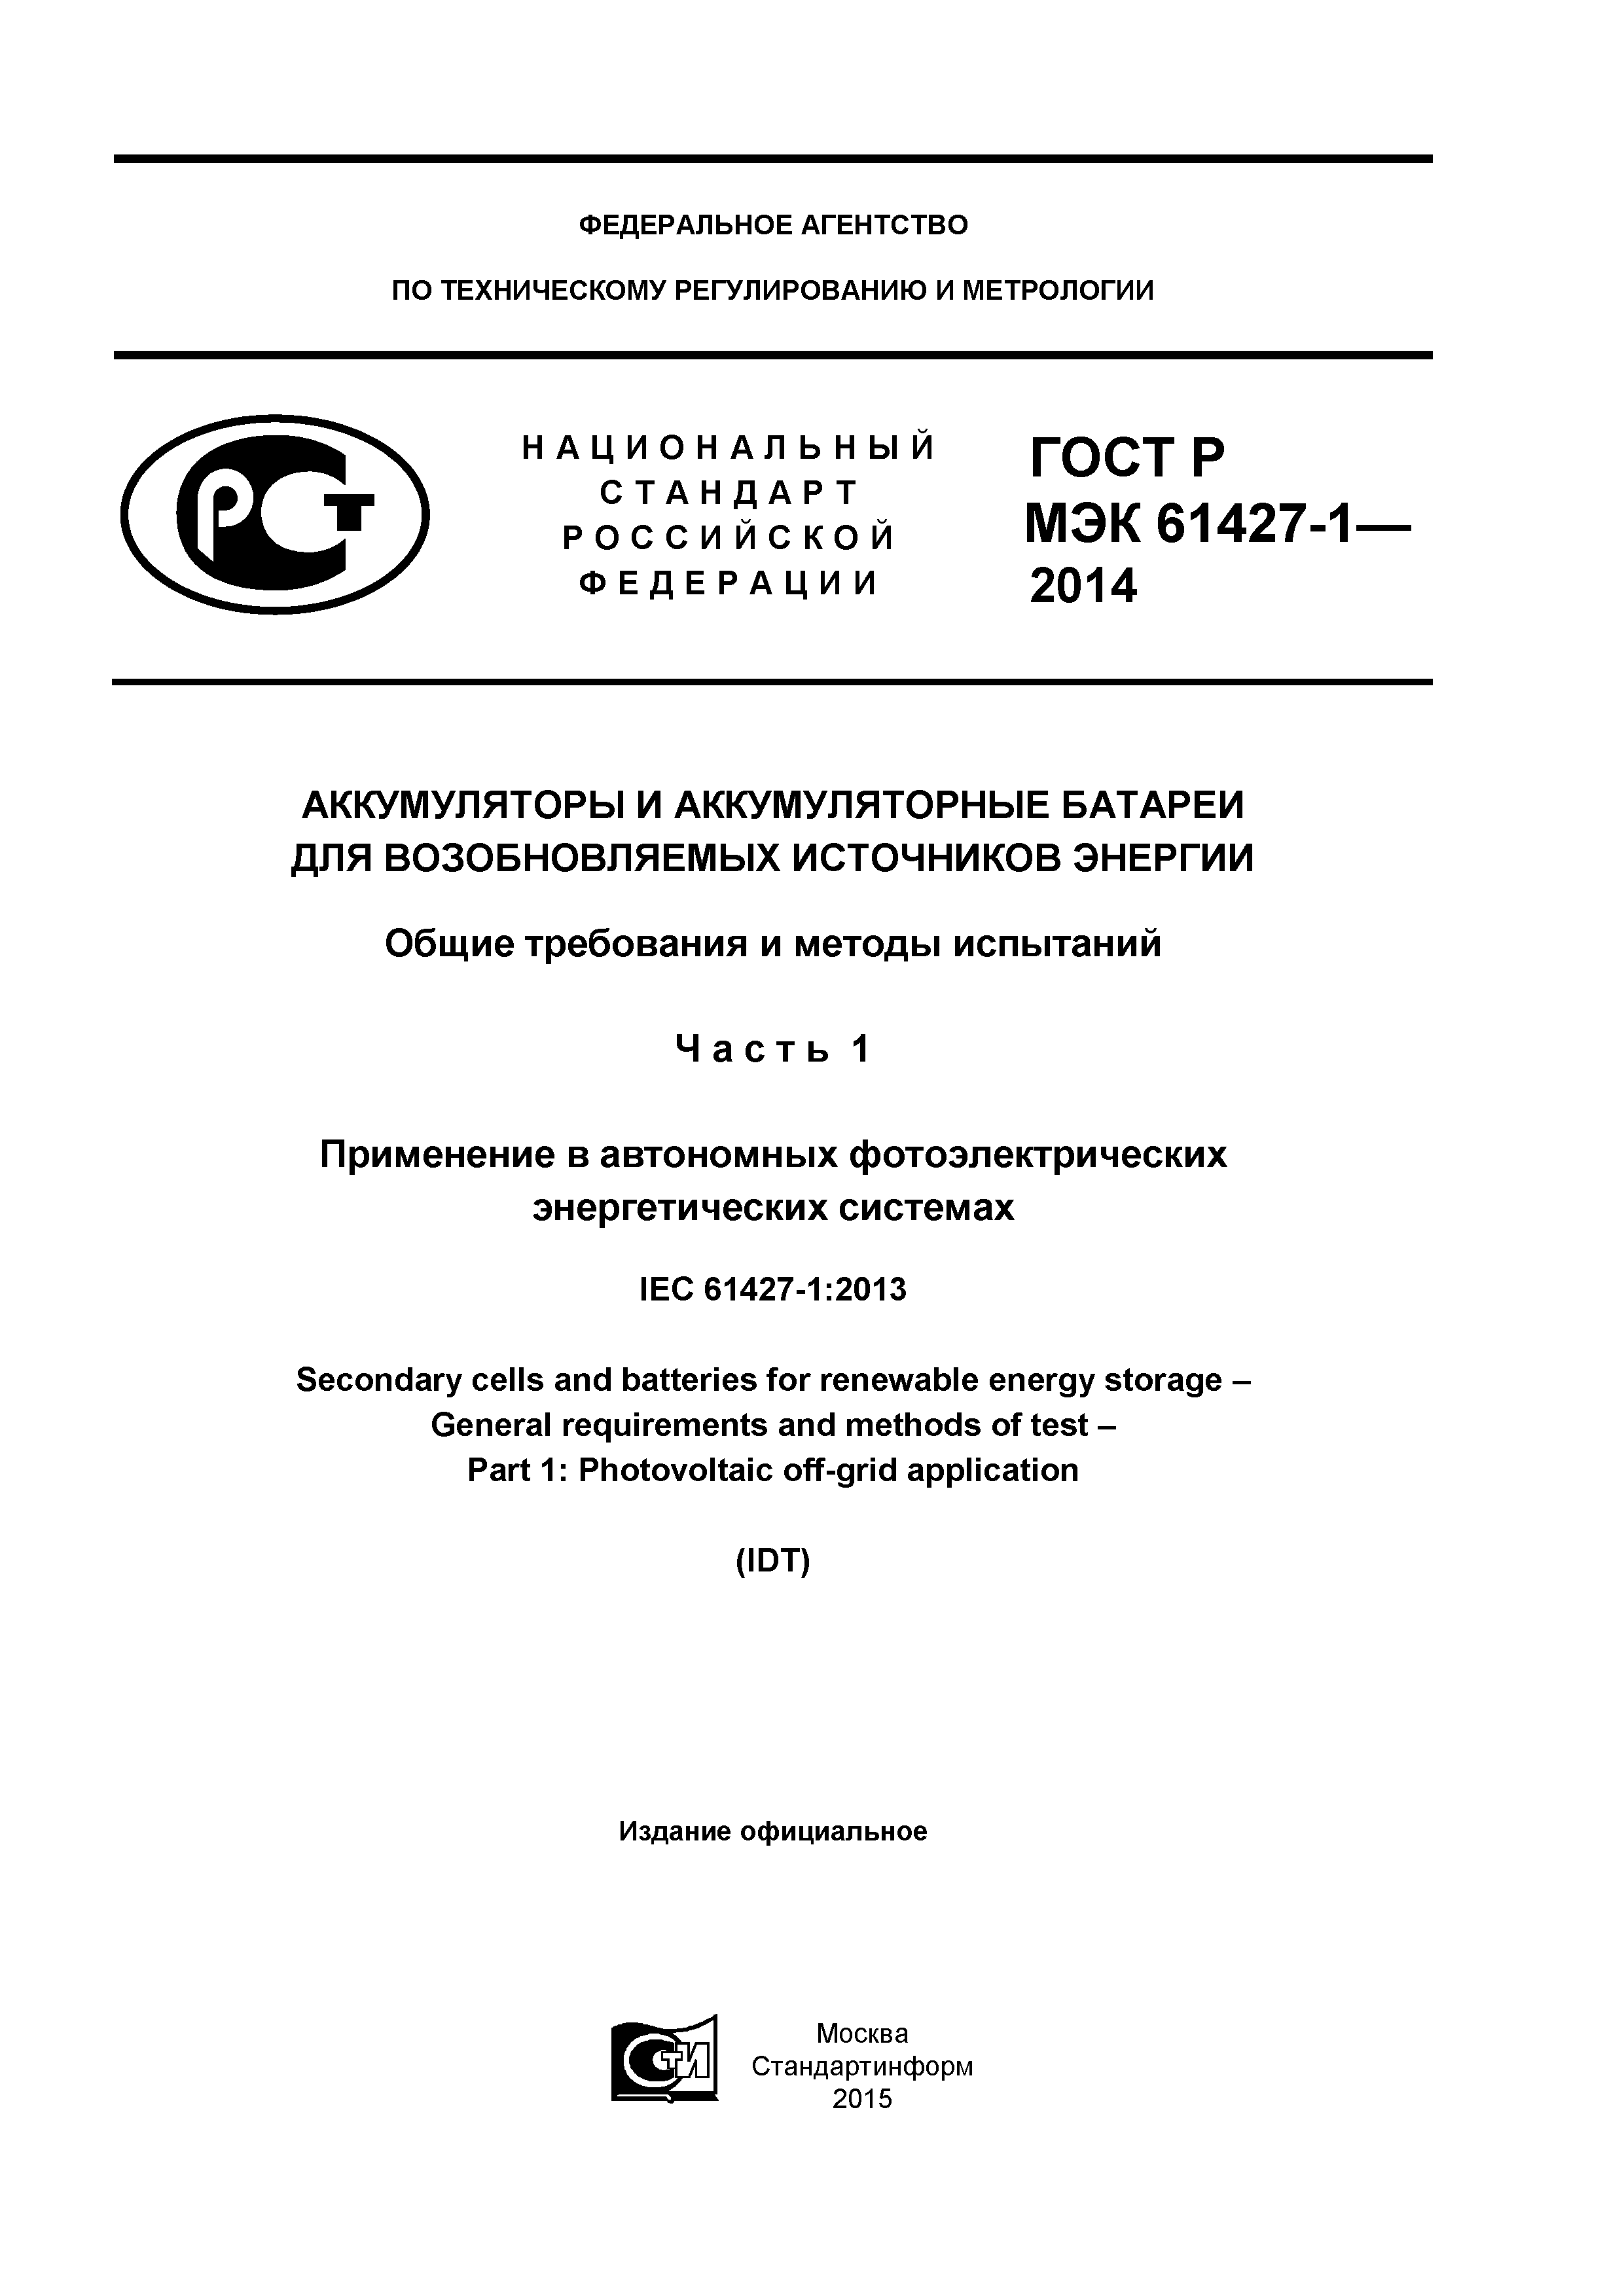 ГОСТ Р МЭК 61427-1-2014